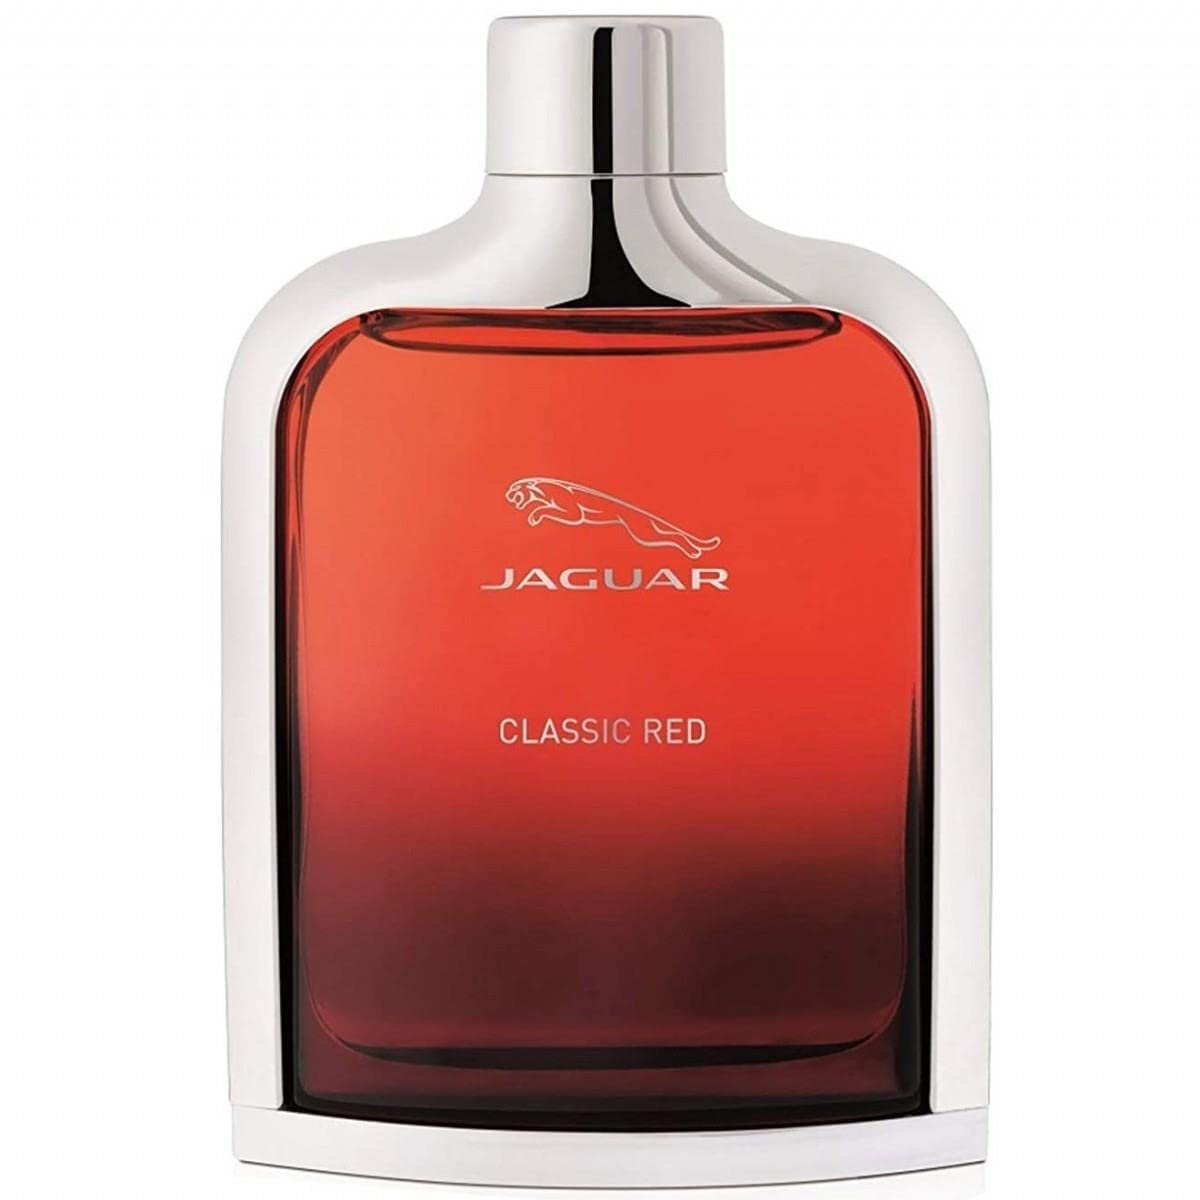 Jaguar Classic Red Eau de Toilette Spray for Men, 3.4 Fl Oz